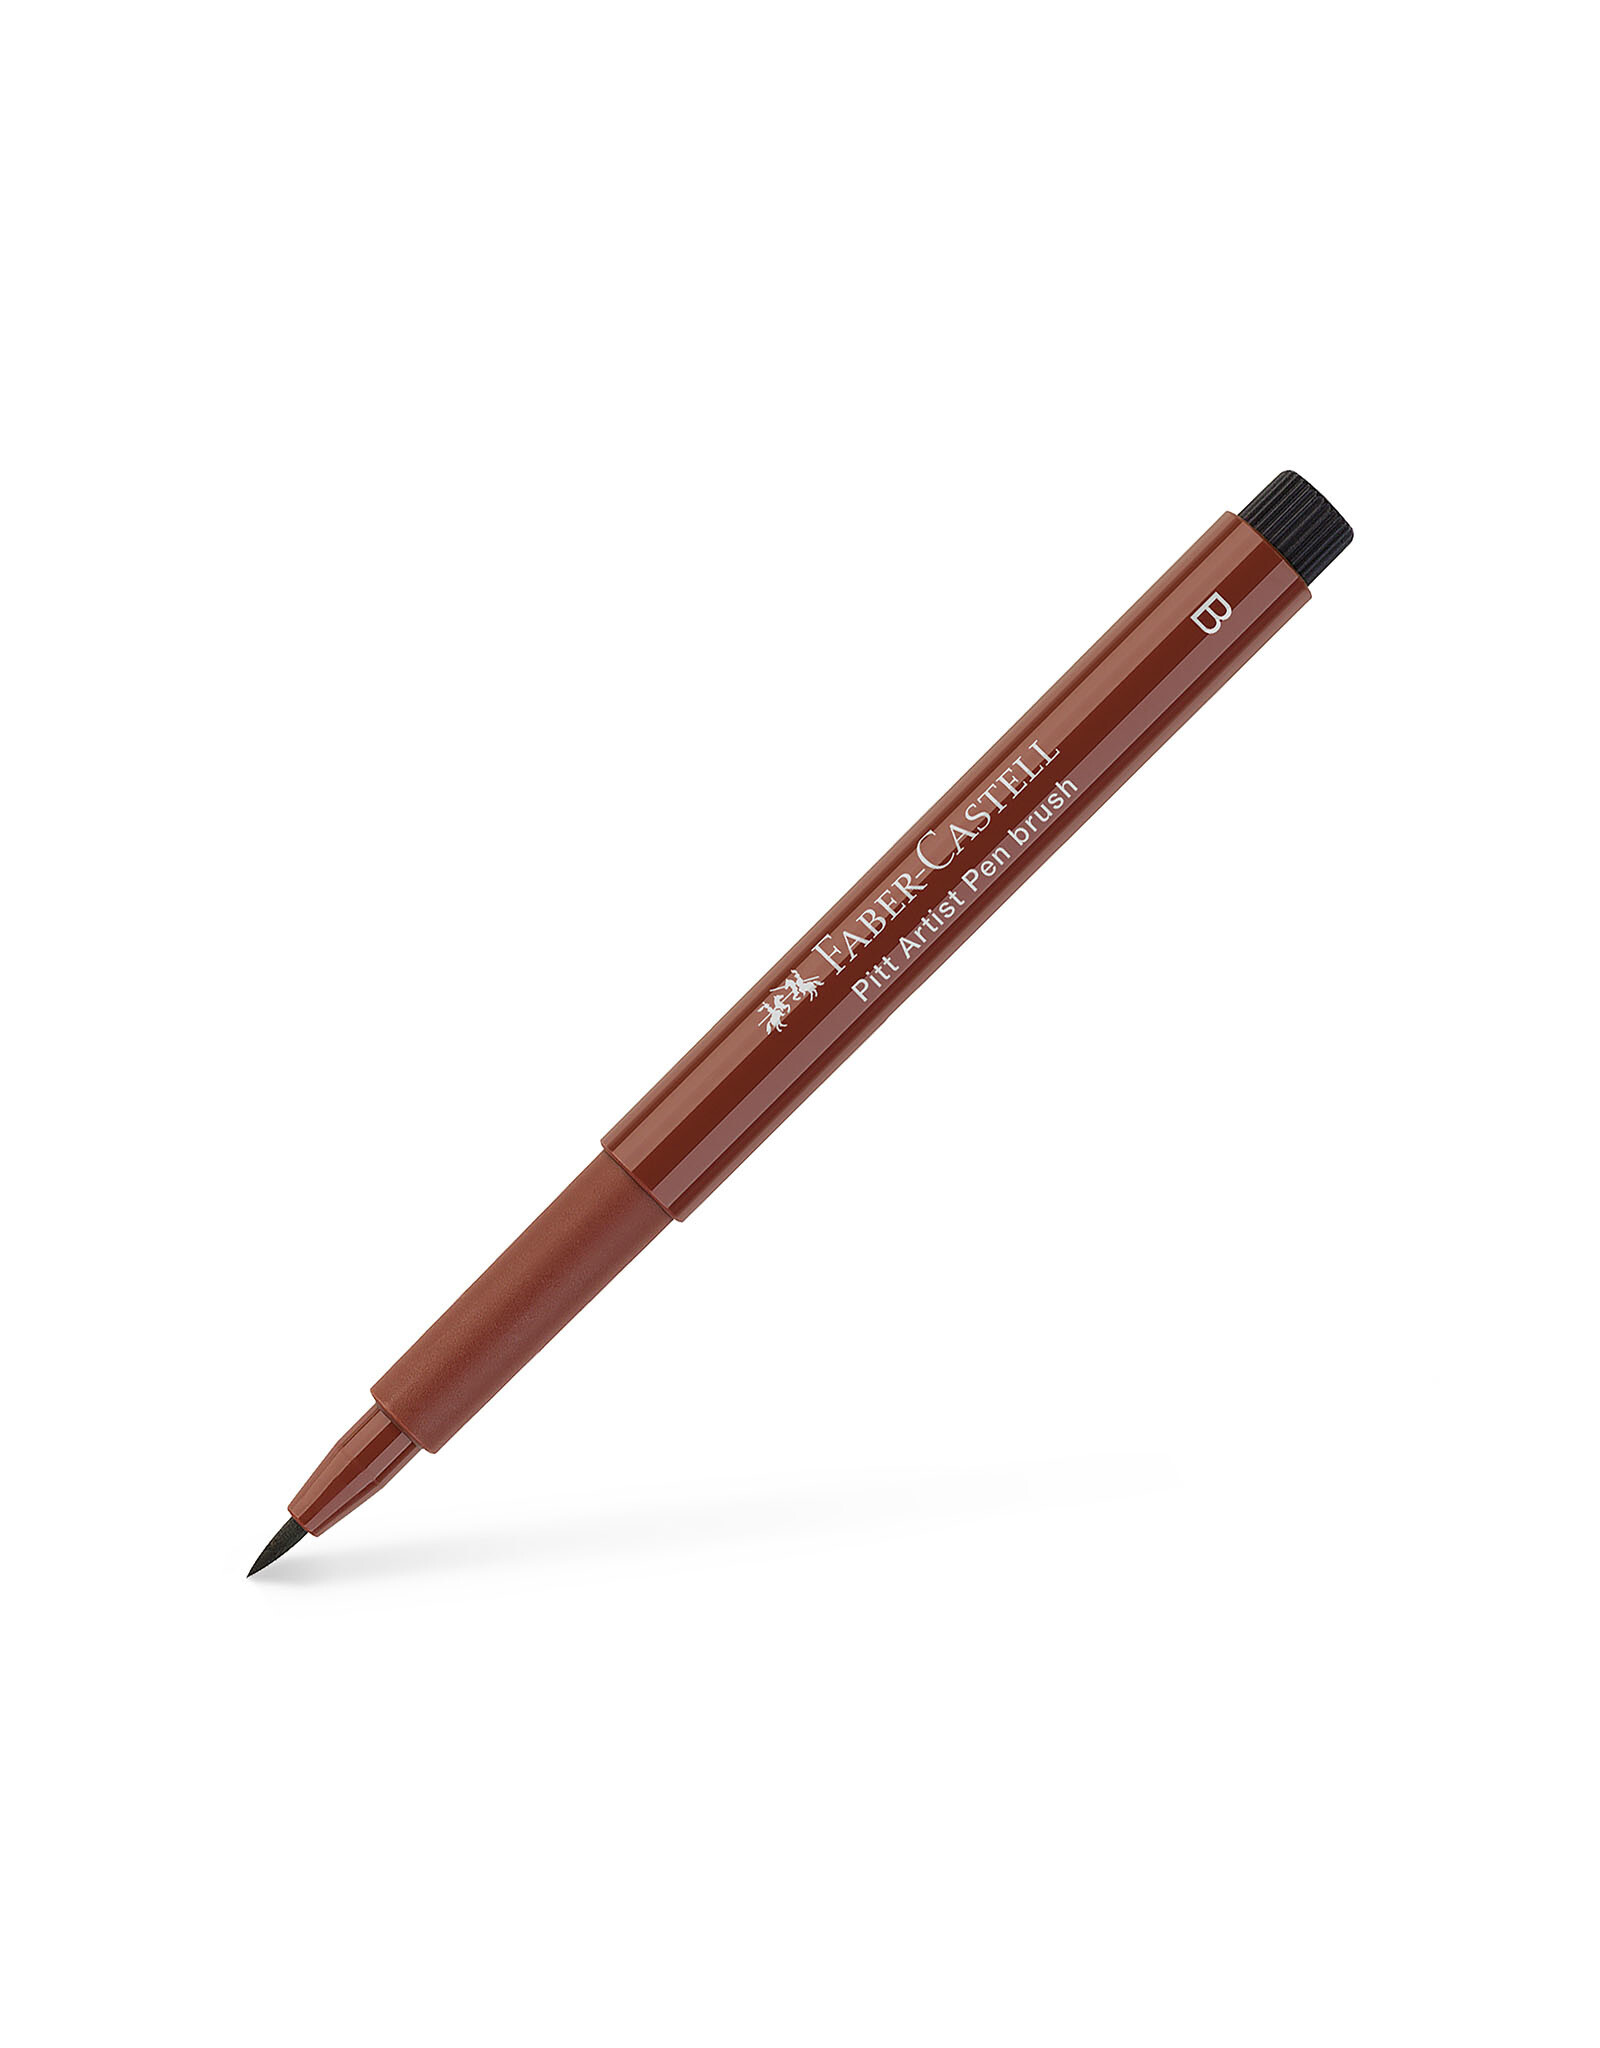 FABER-CASTELL Pitt Artist Pen, Brush, Caput Mortuum